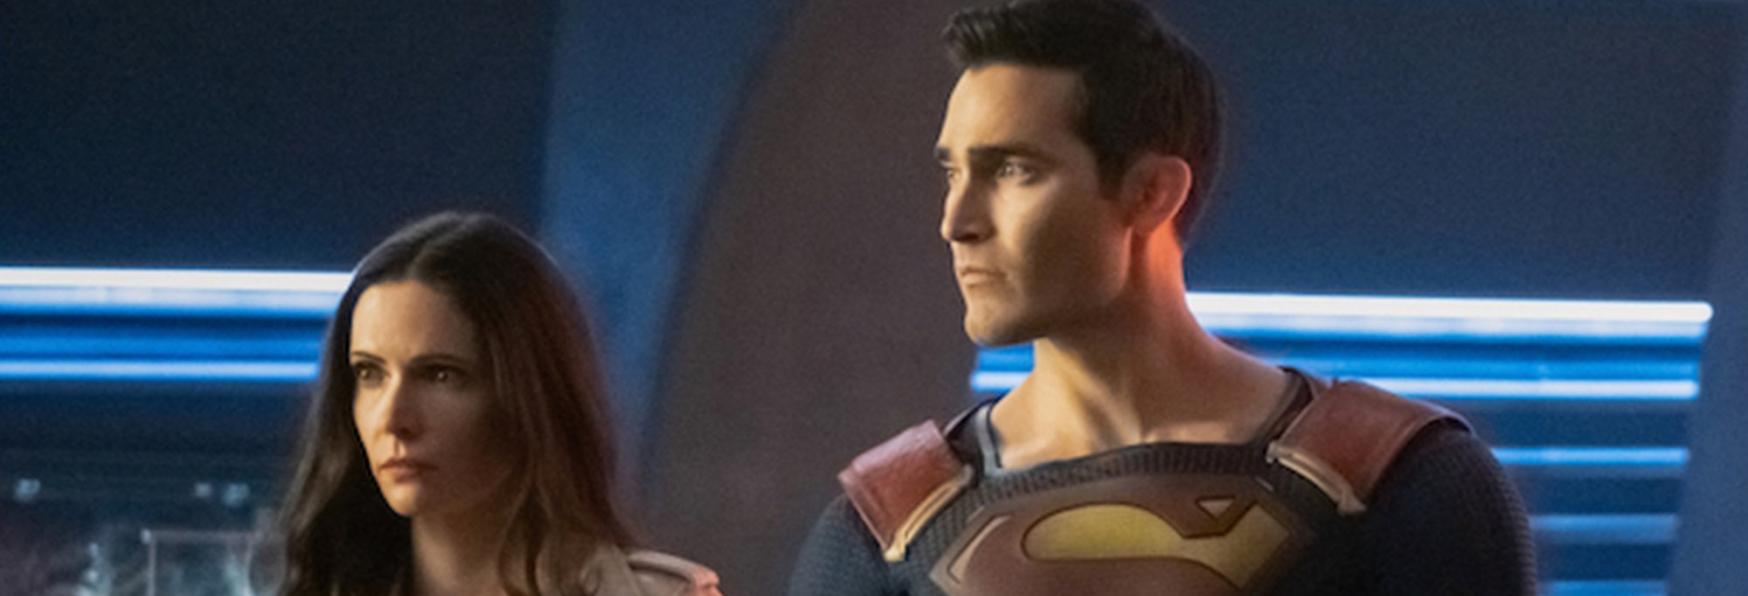 Superman & Lois: Stacey Farber nel Cast della nuova Serie TV targata The CW